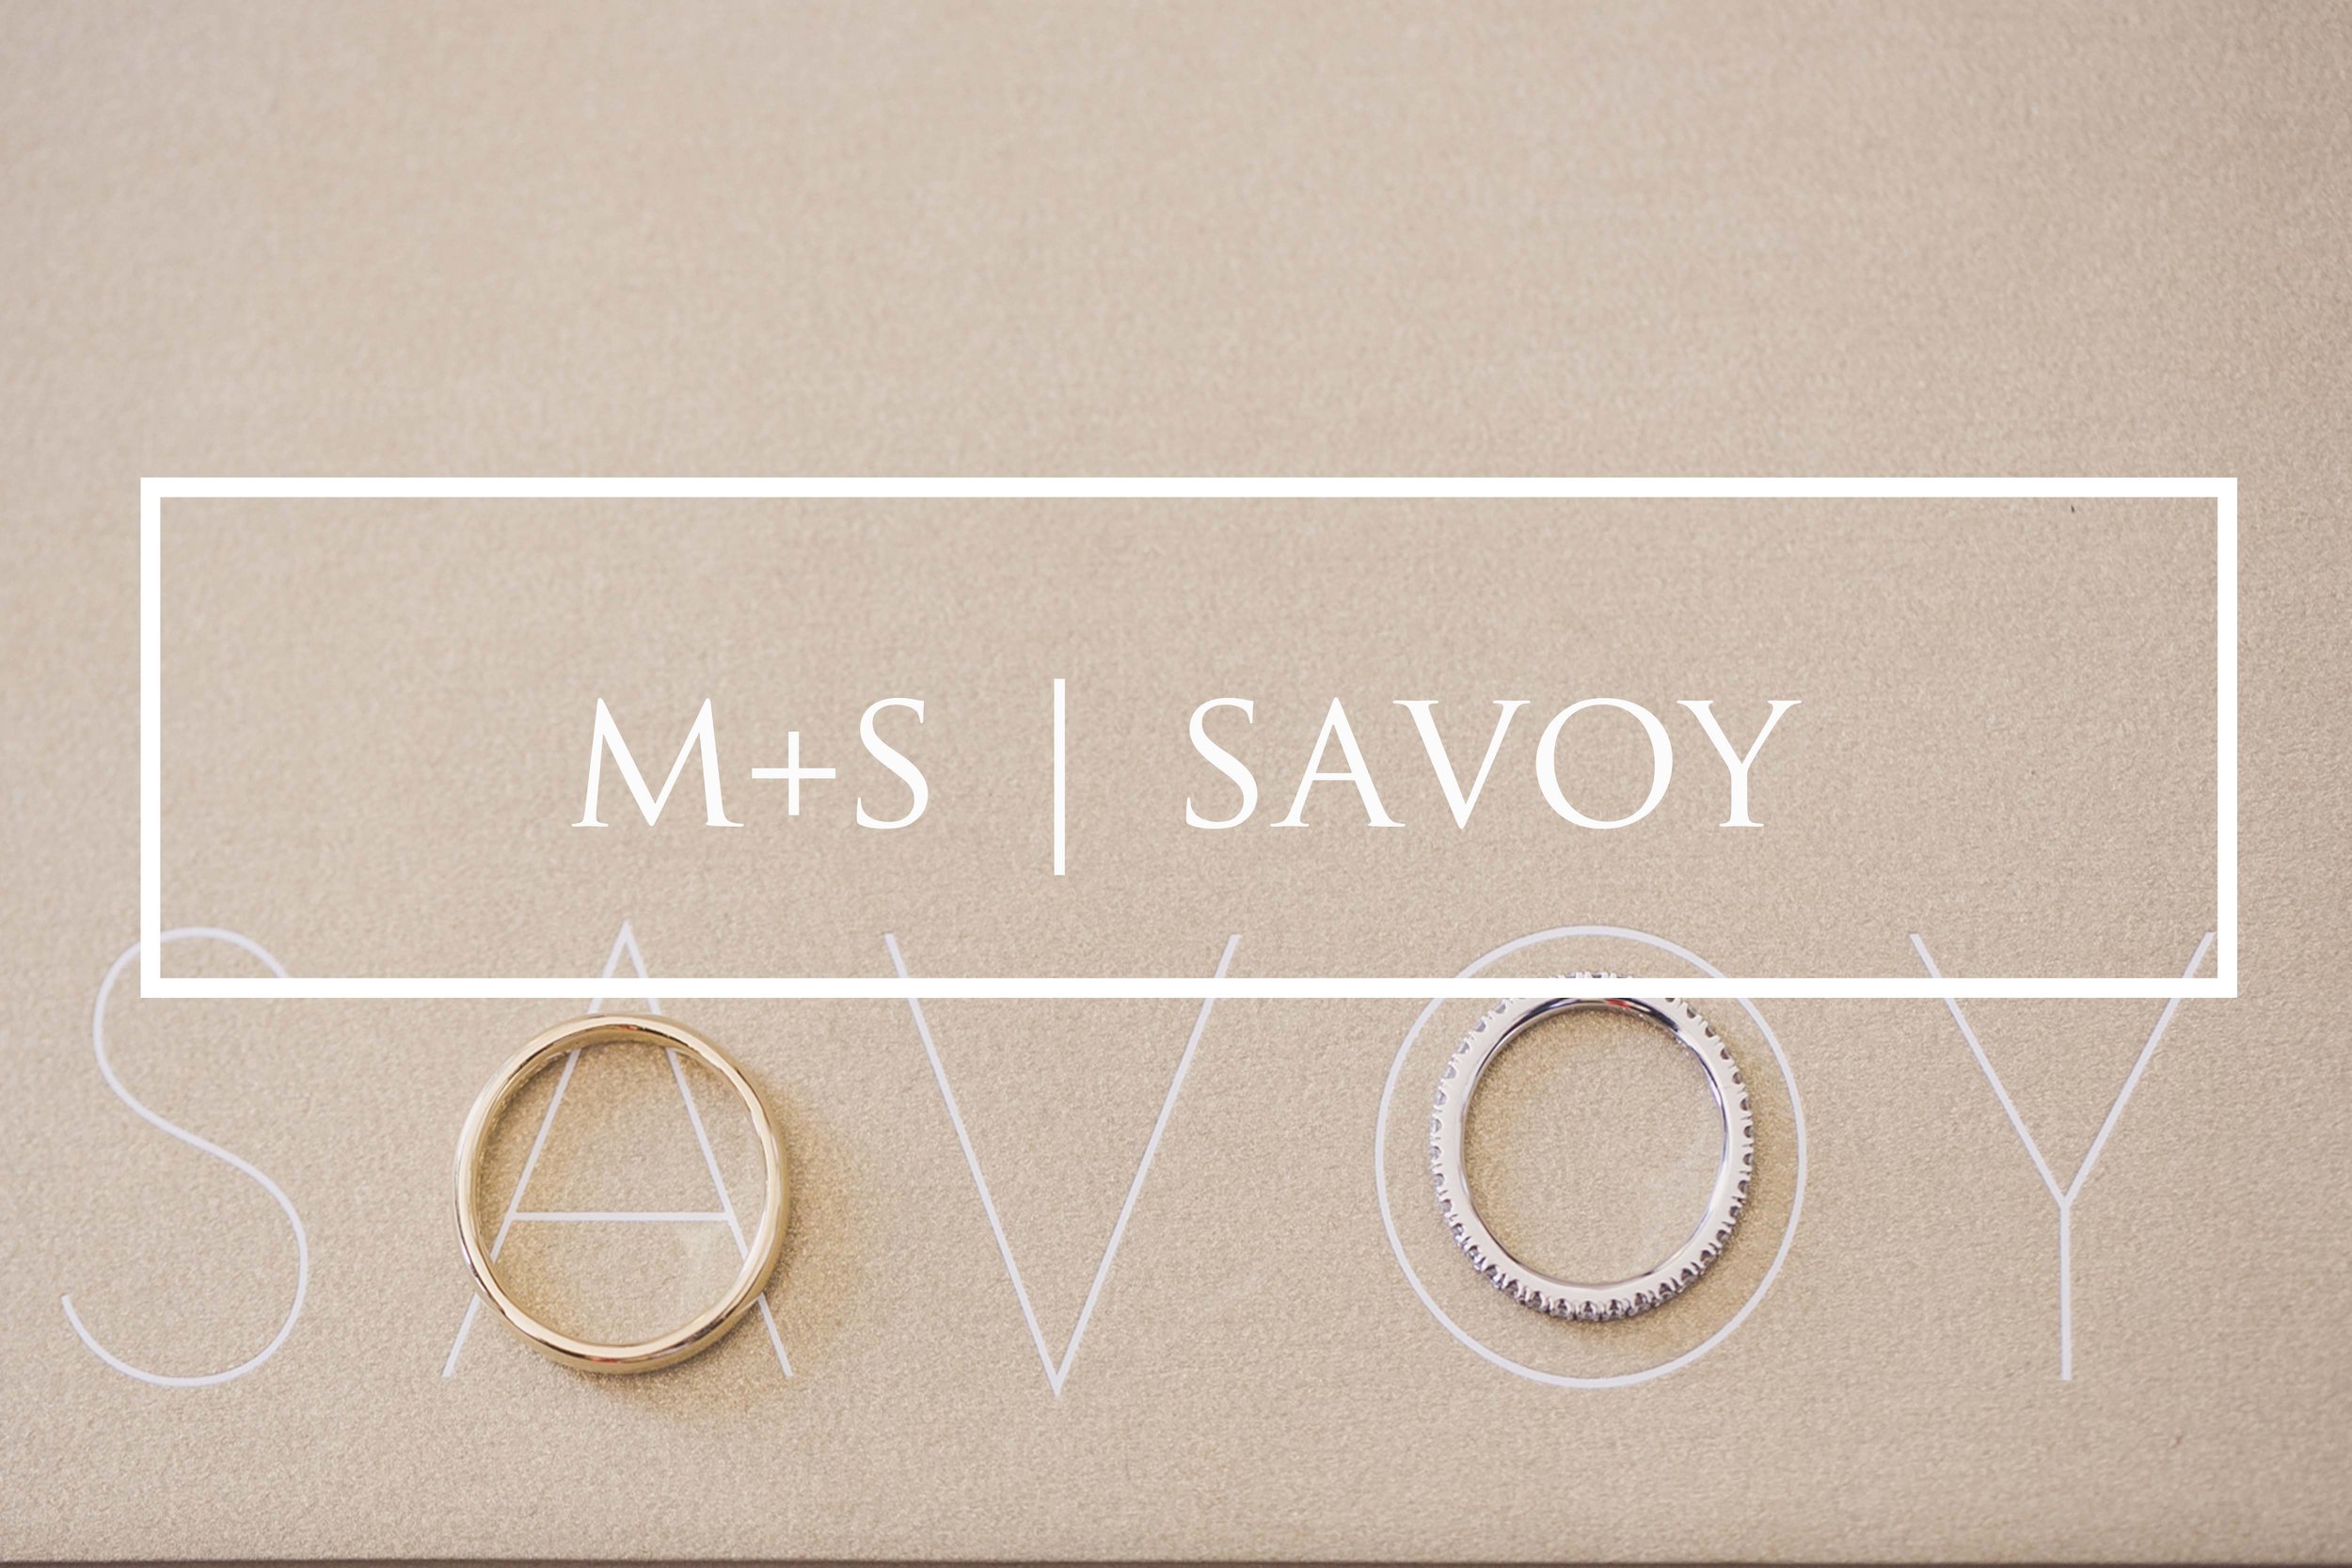 Savoy London Wedding Rings